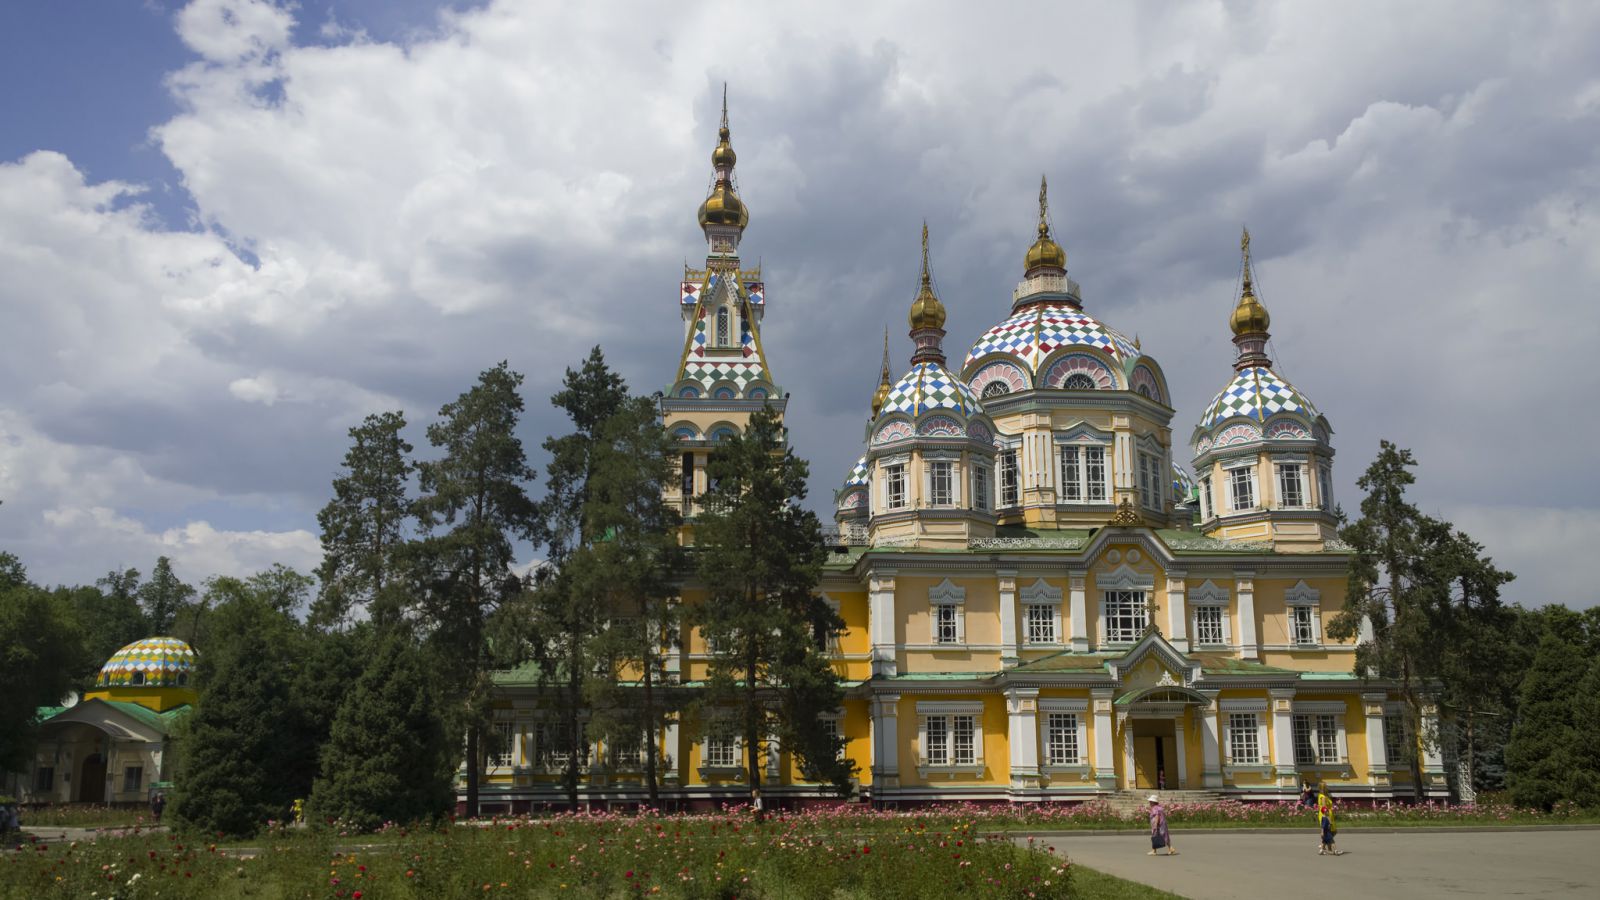 Свято-Вознесенский кафедральный собор, Алматы - Алма-Ата, Казахстан фото #32969